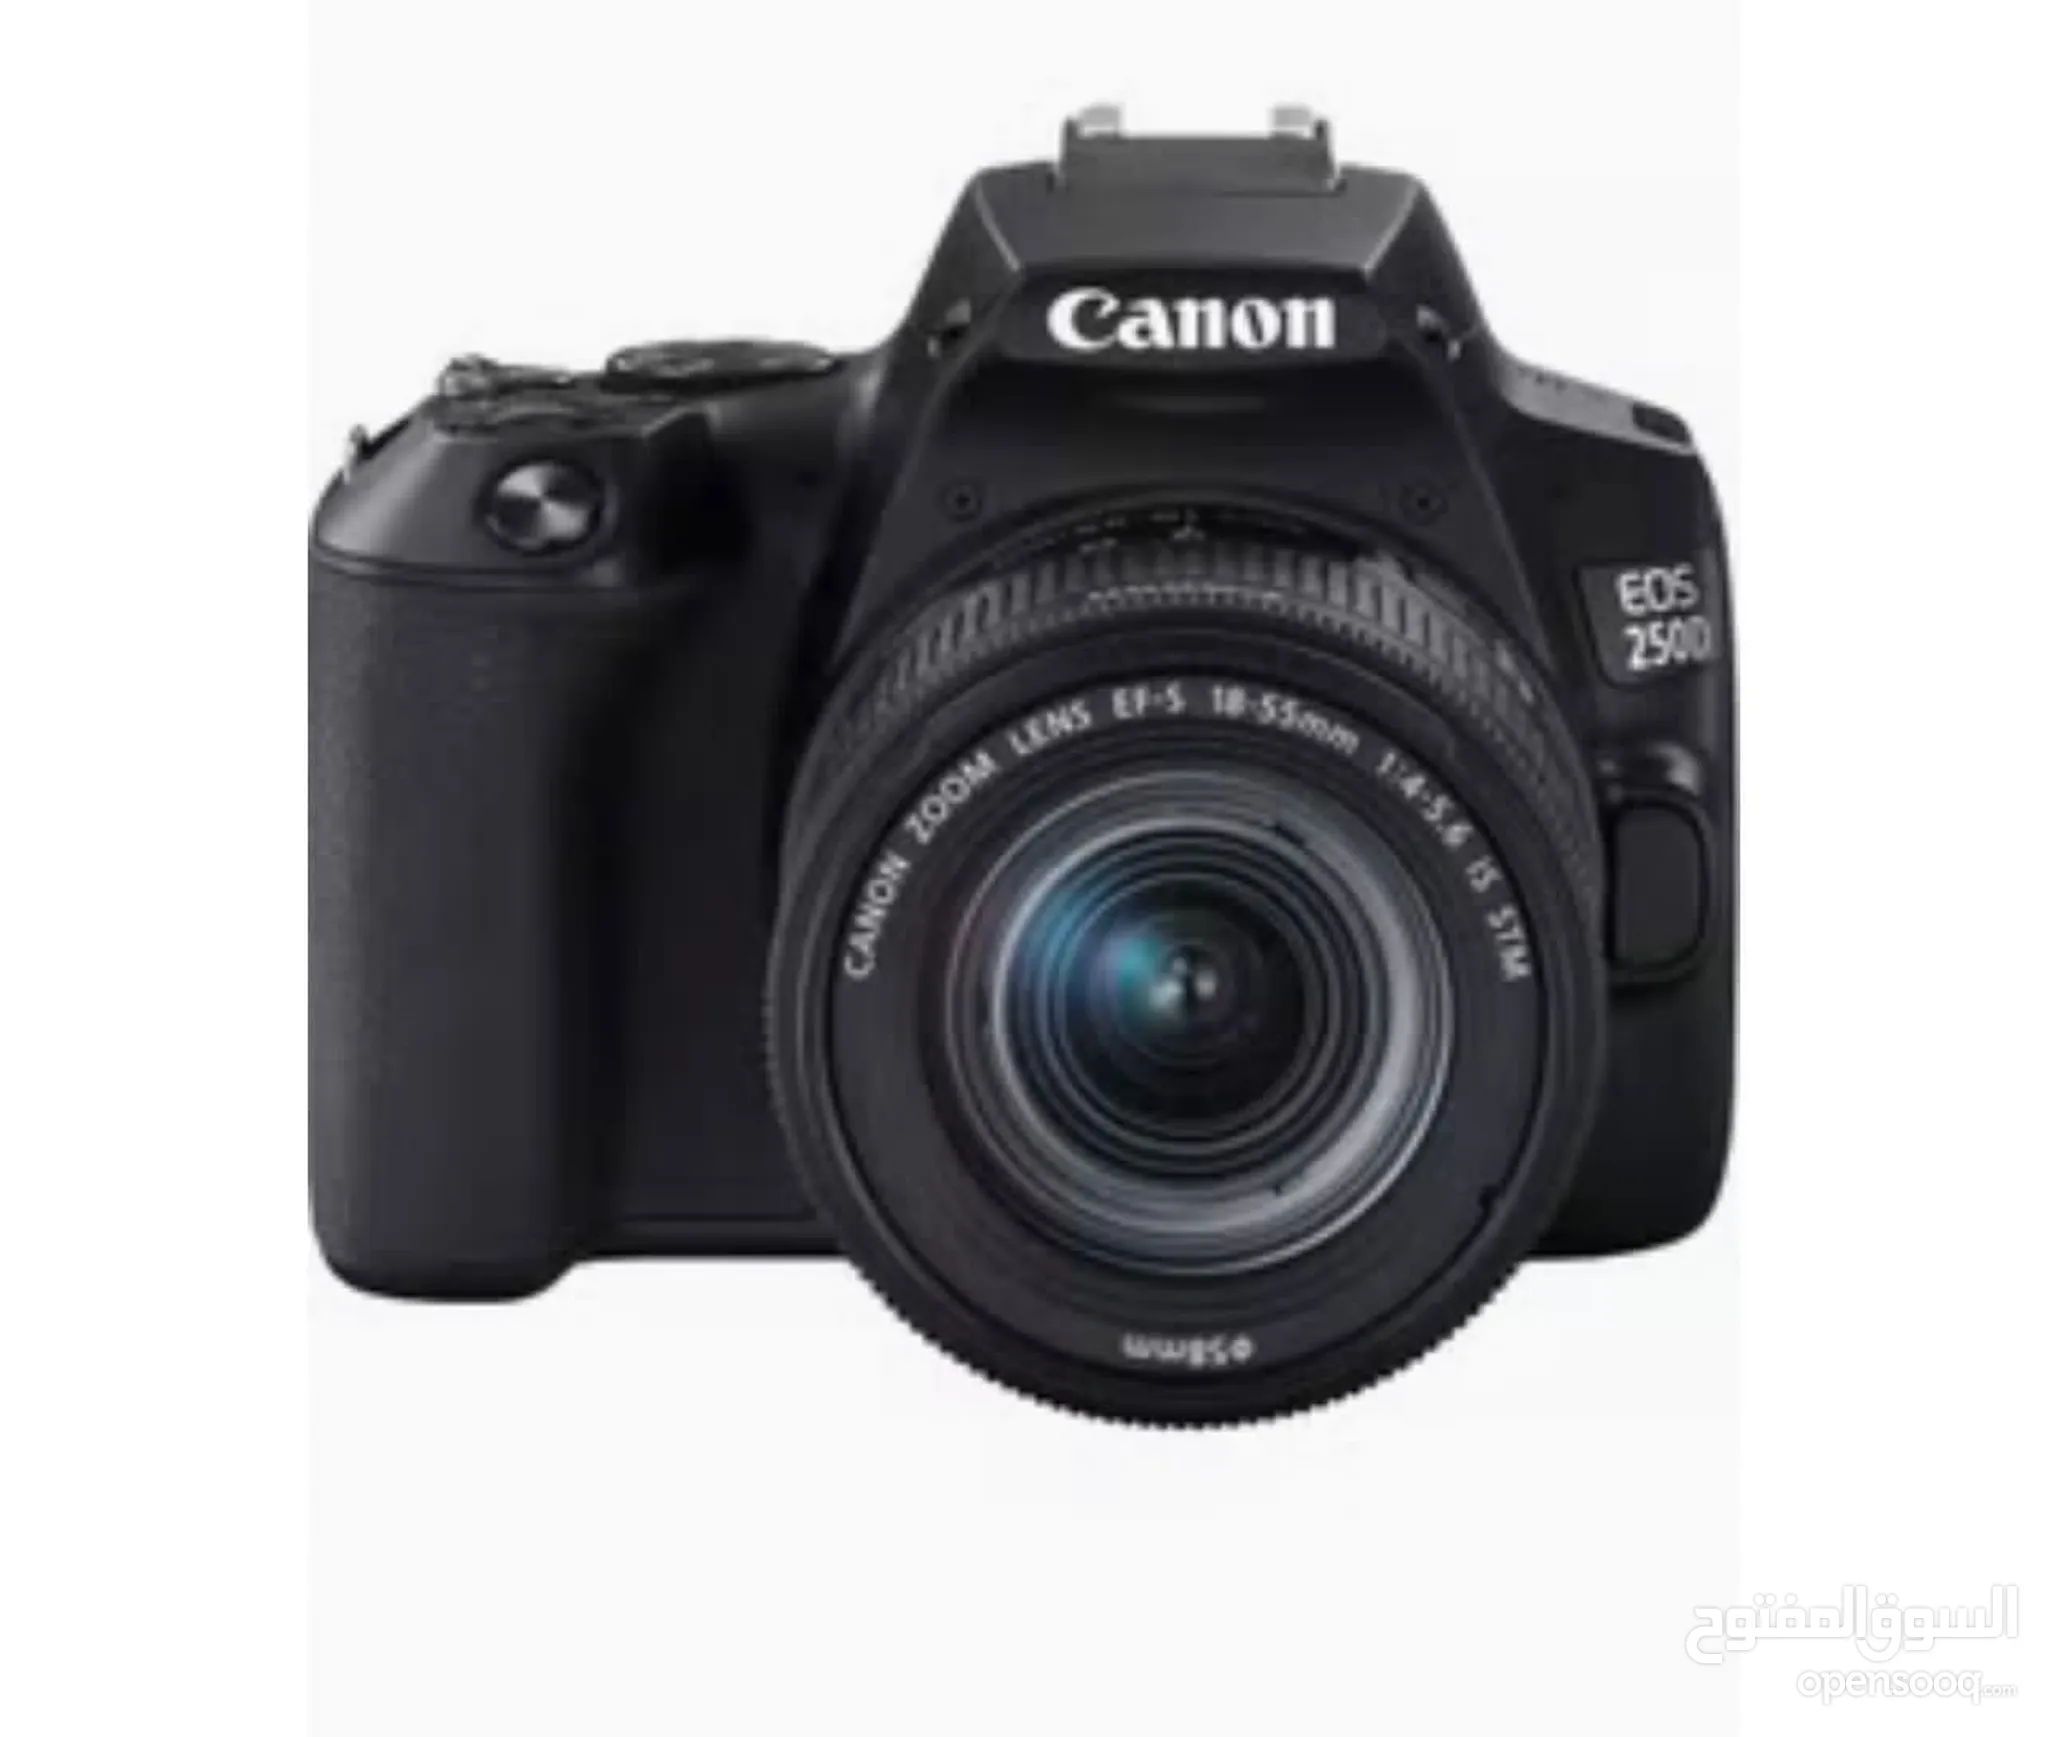 كام كانون للبيع : كاميرا كانون 4000d : 70D : 700D : 600D : 5D : أفضل الأسعار  : أبو ظبي | السوق المفتوح